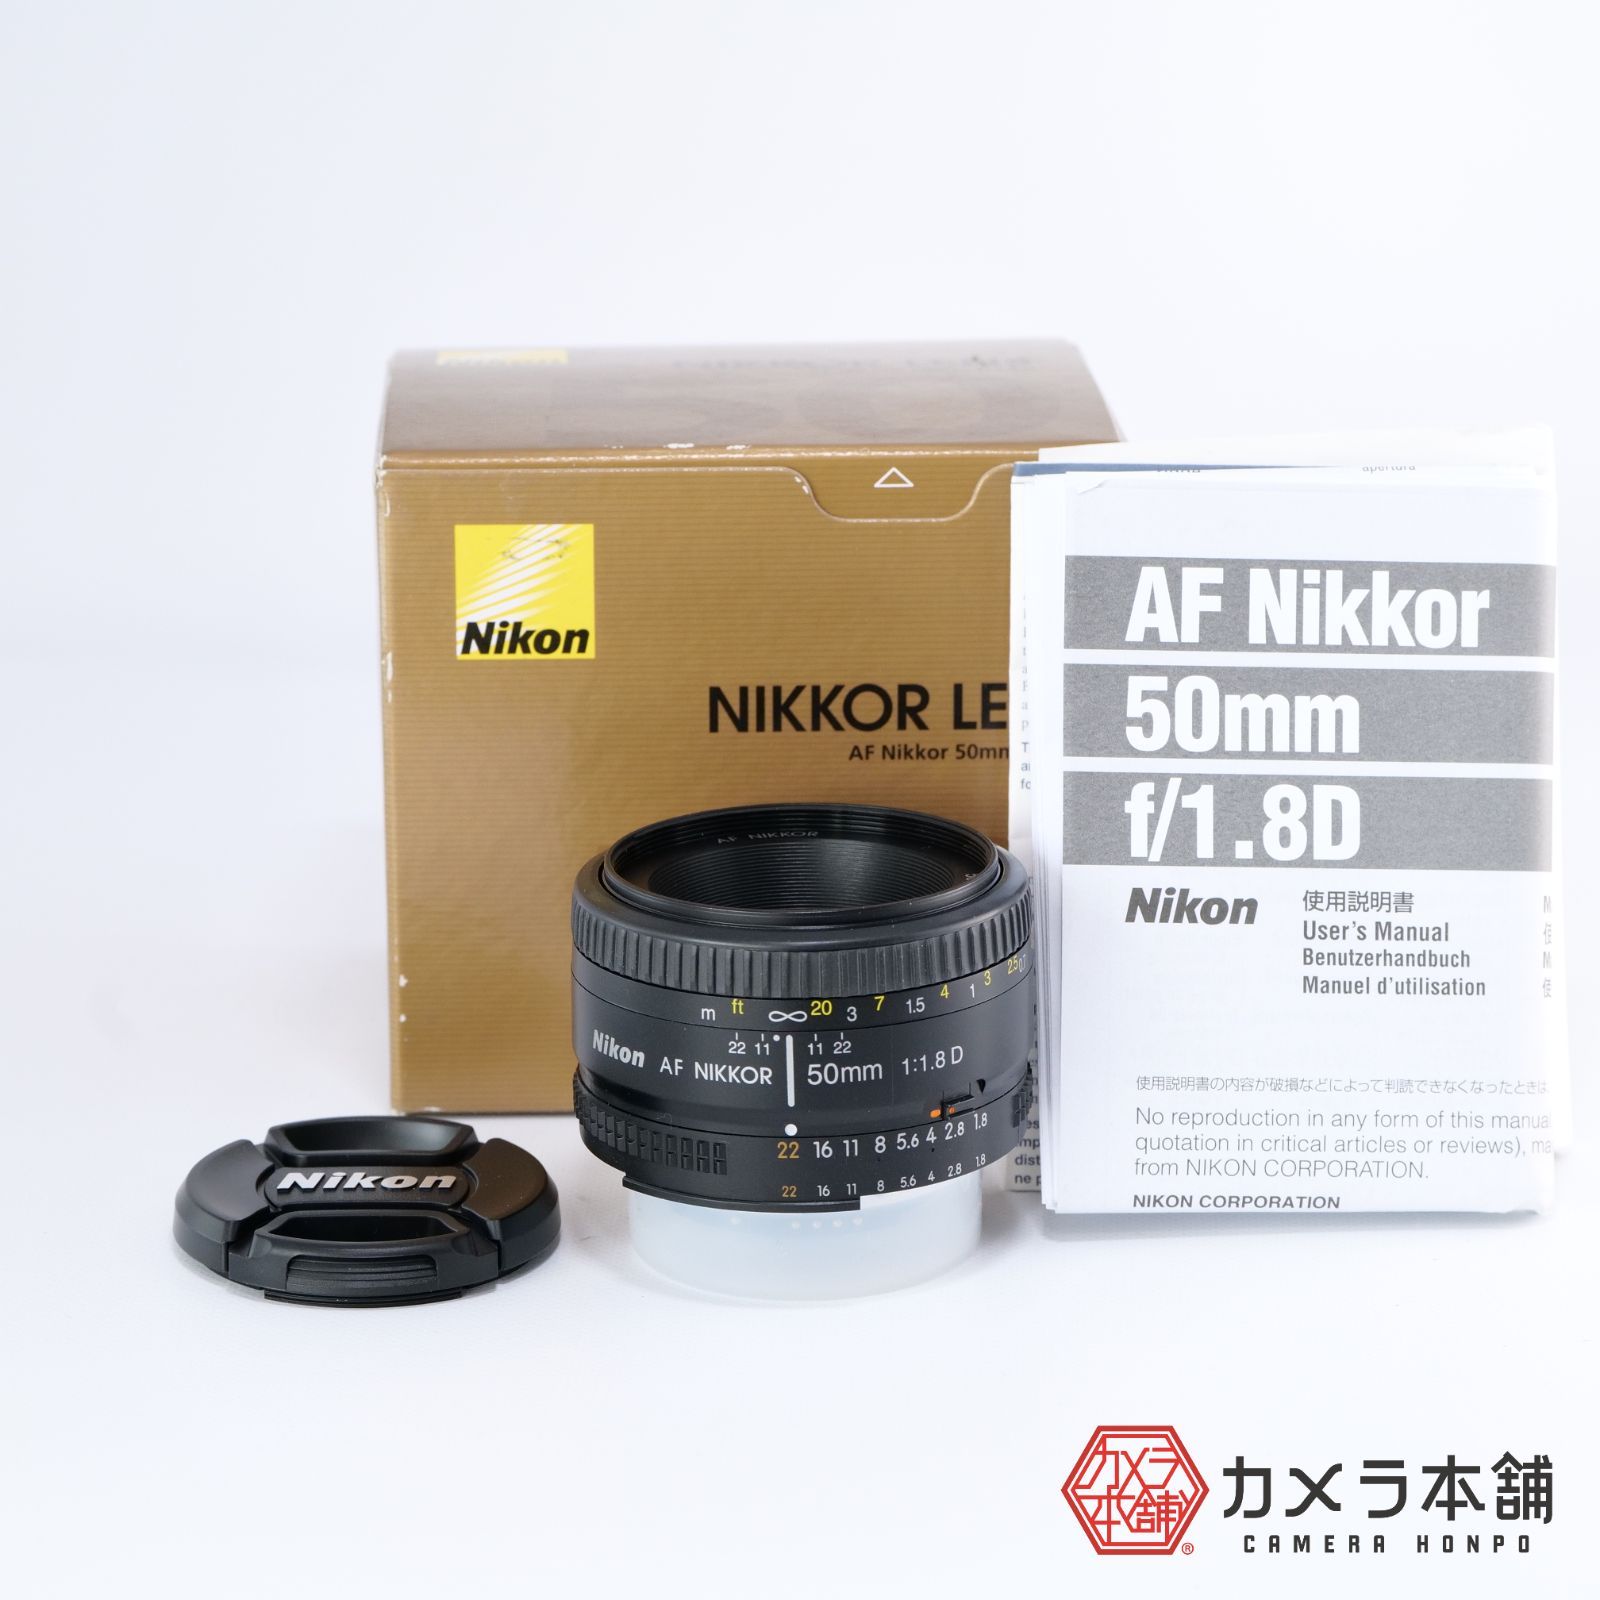 Nikon ニコン 単焦点レンズ Ai AF Nikkor 50mm F1.8D